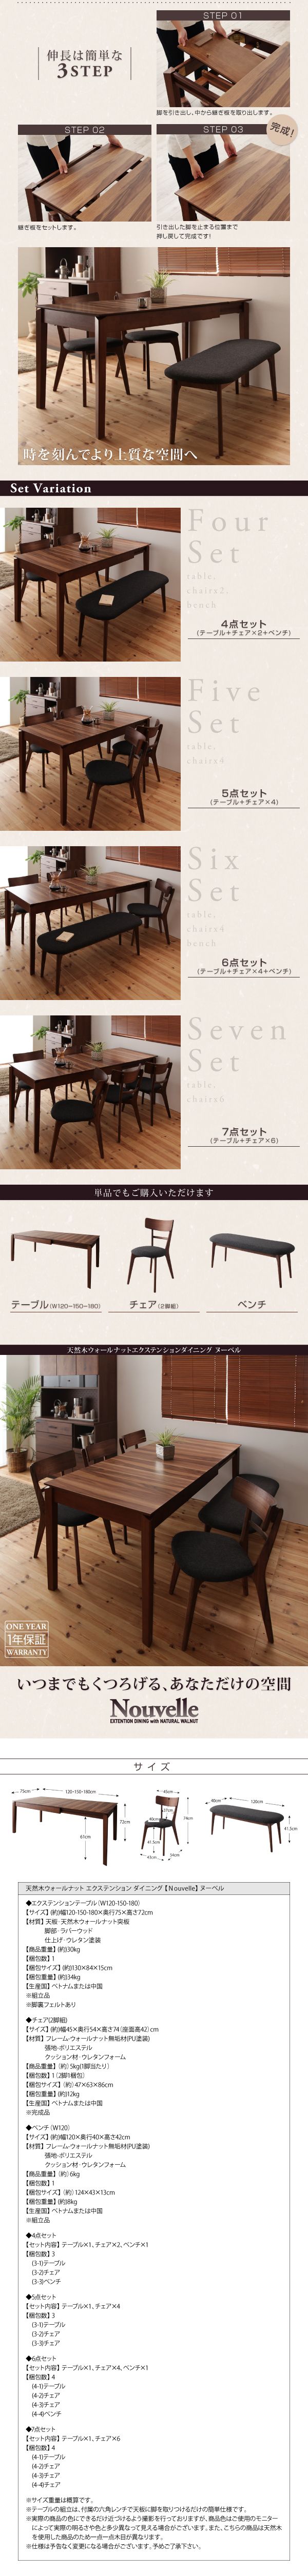 【最新型】■Nouvelle 単品 テーブル(W120-150-180) 天然木ウォールナットエクステンションダイニング [ヌーベル] 背面からみても絵になる その他